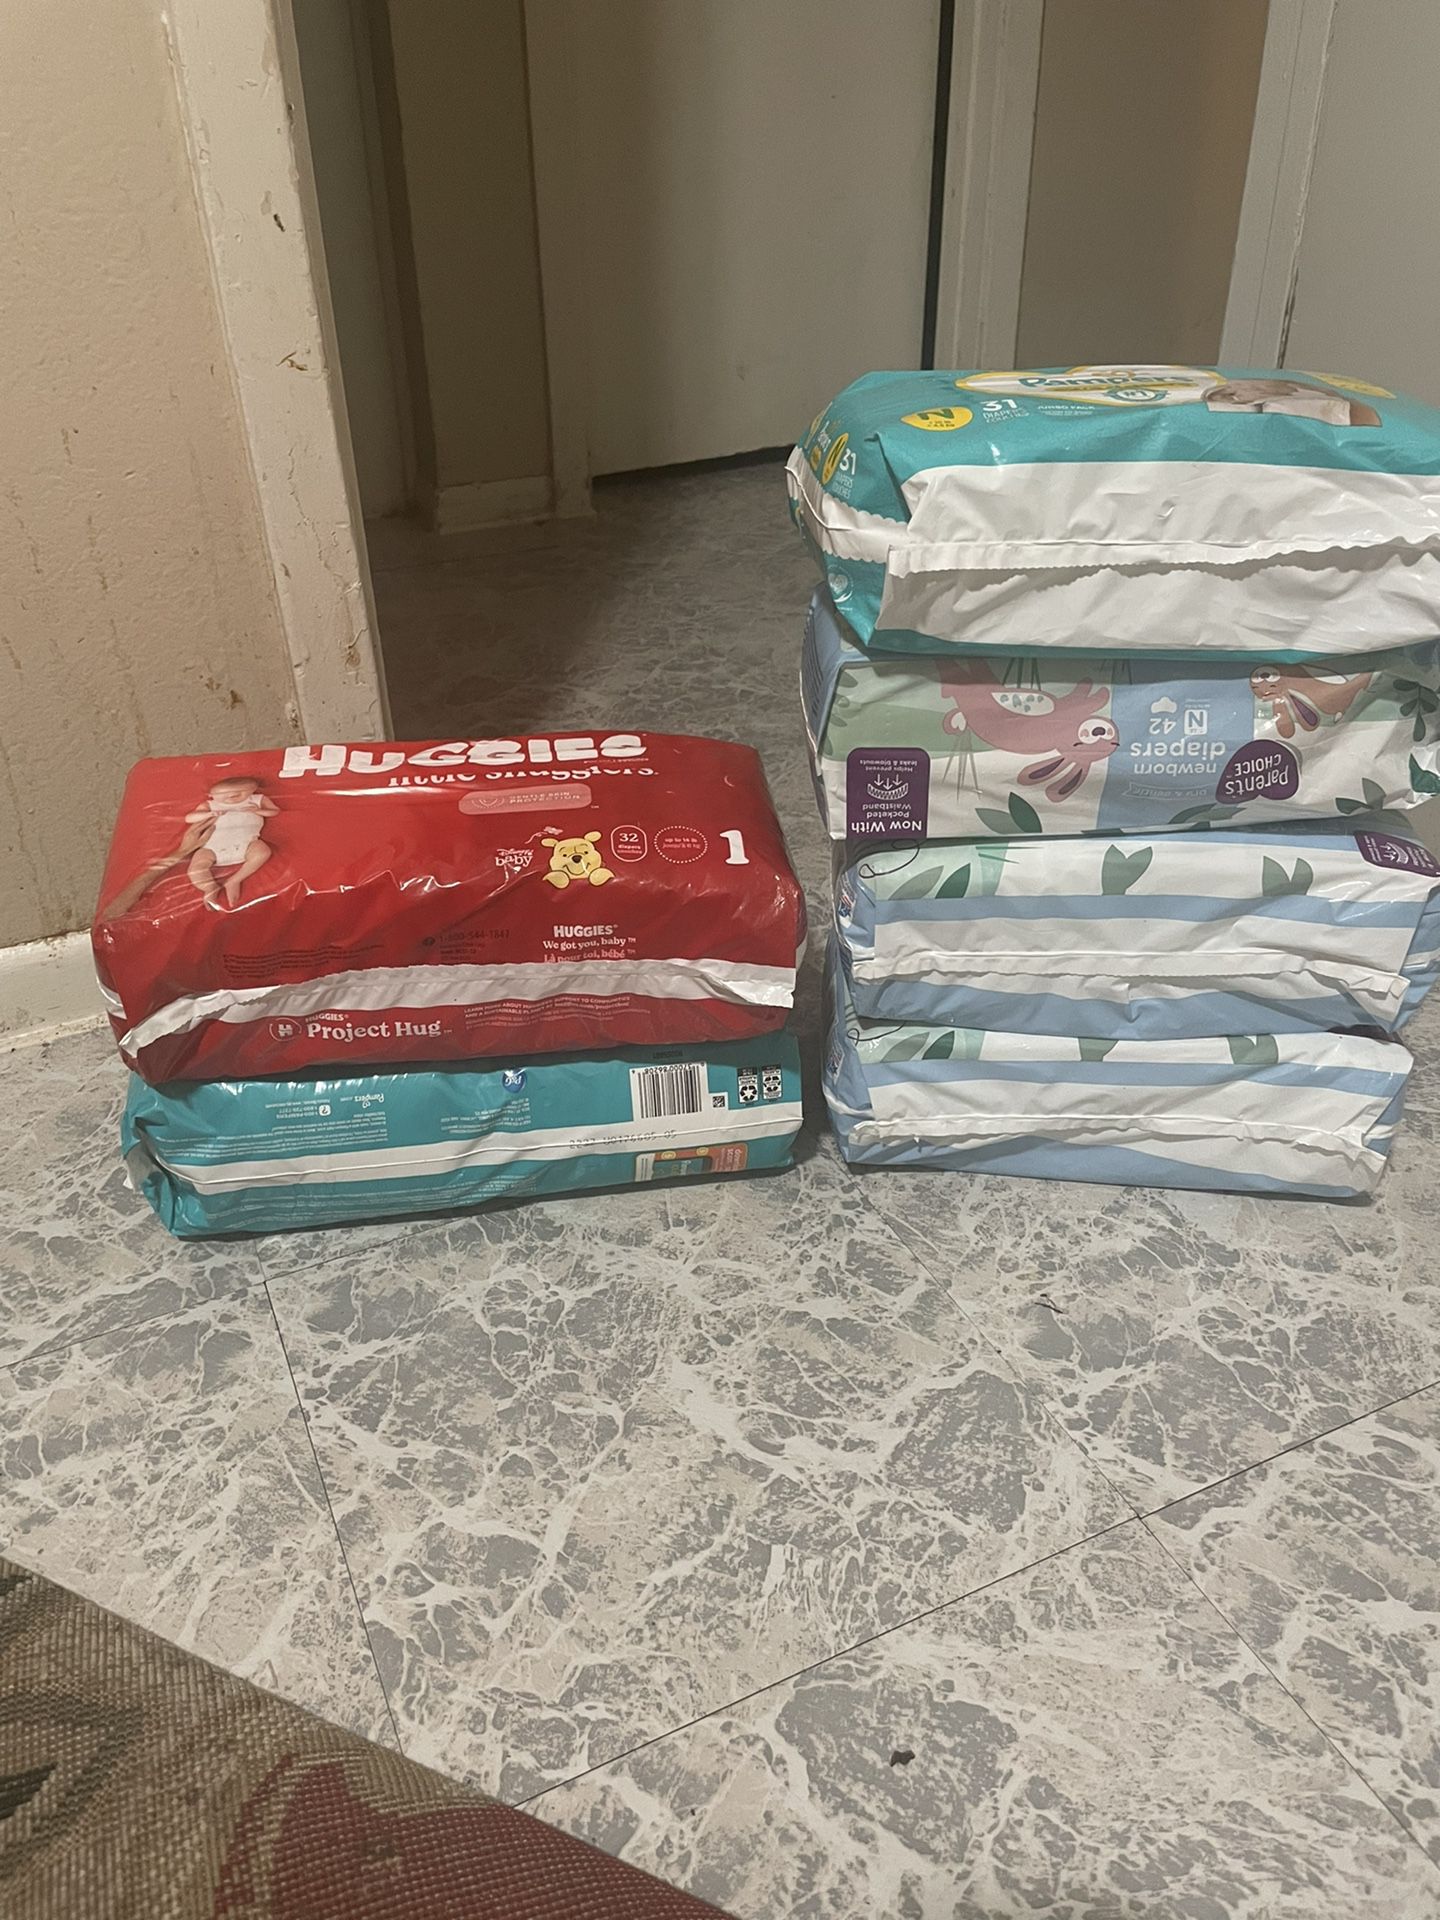 4 Packs Of Newborn &2 Packs Of Size 1